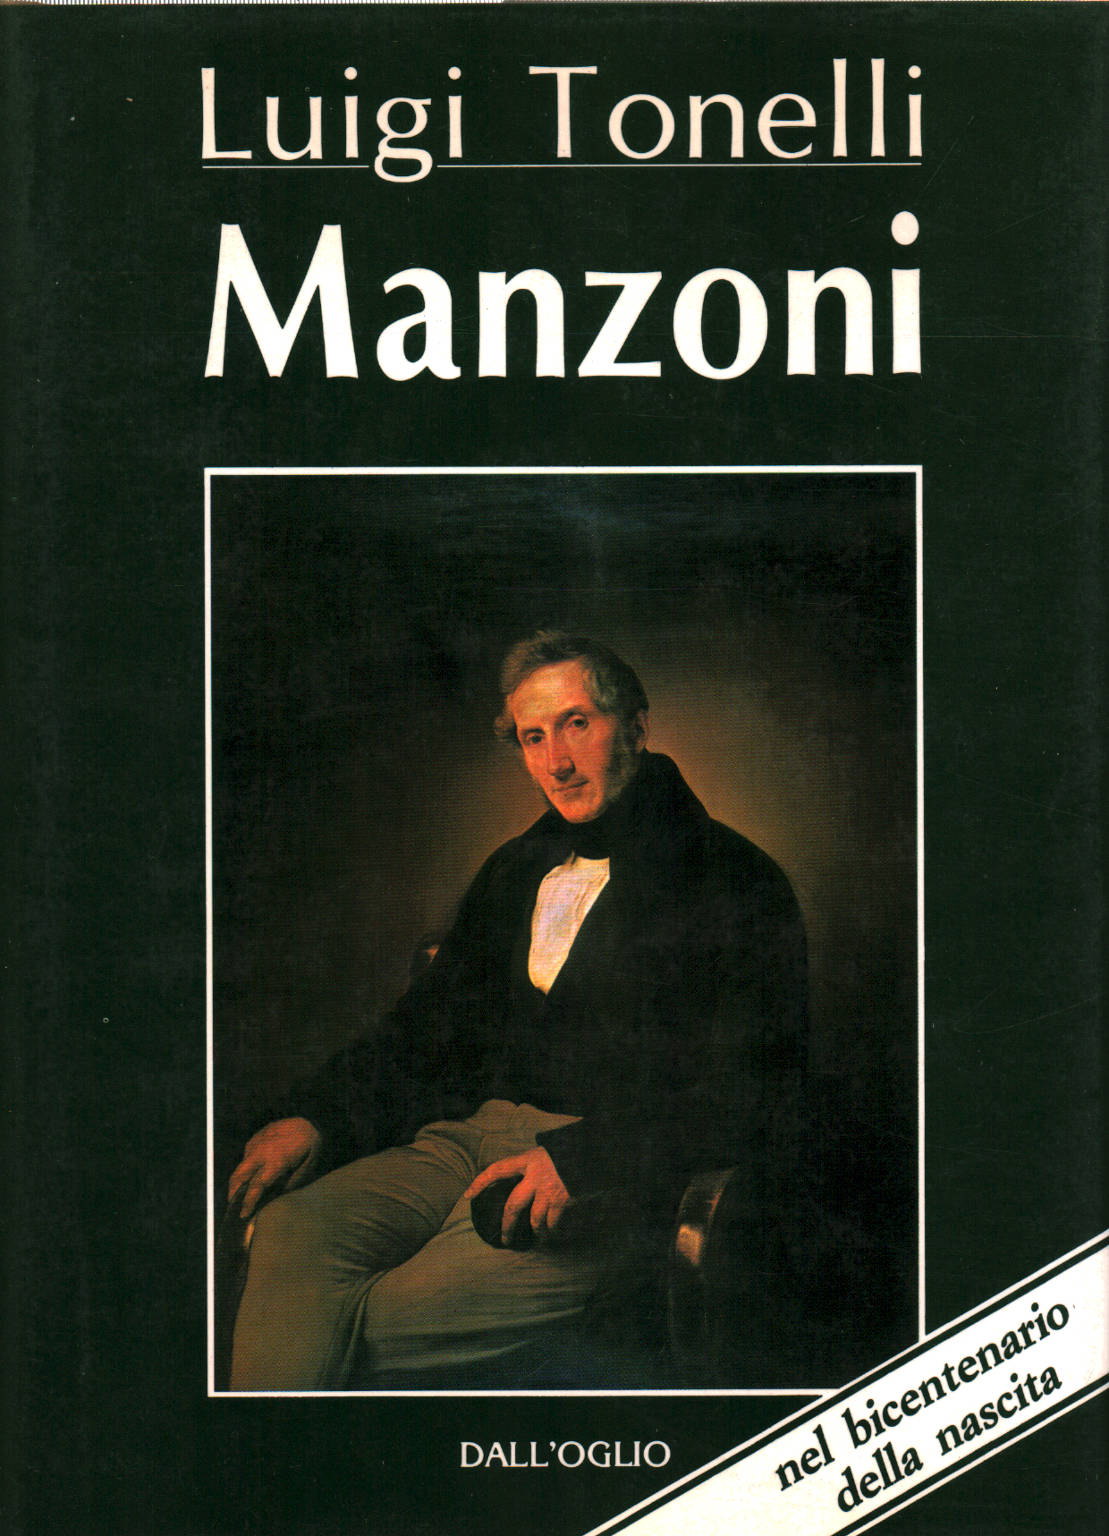 Manzoni, Luigi Tonelli